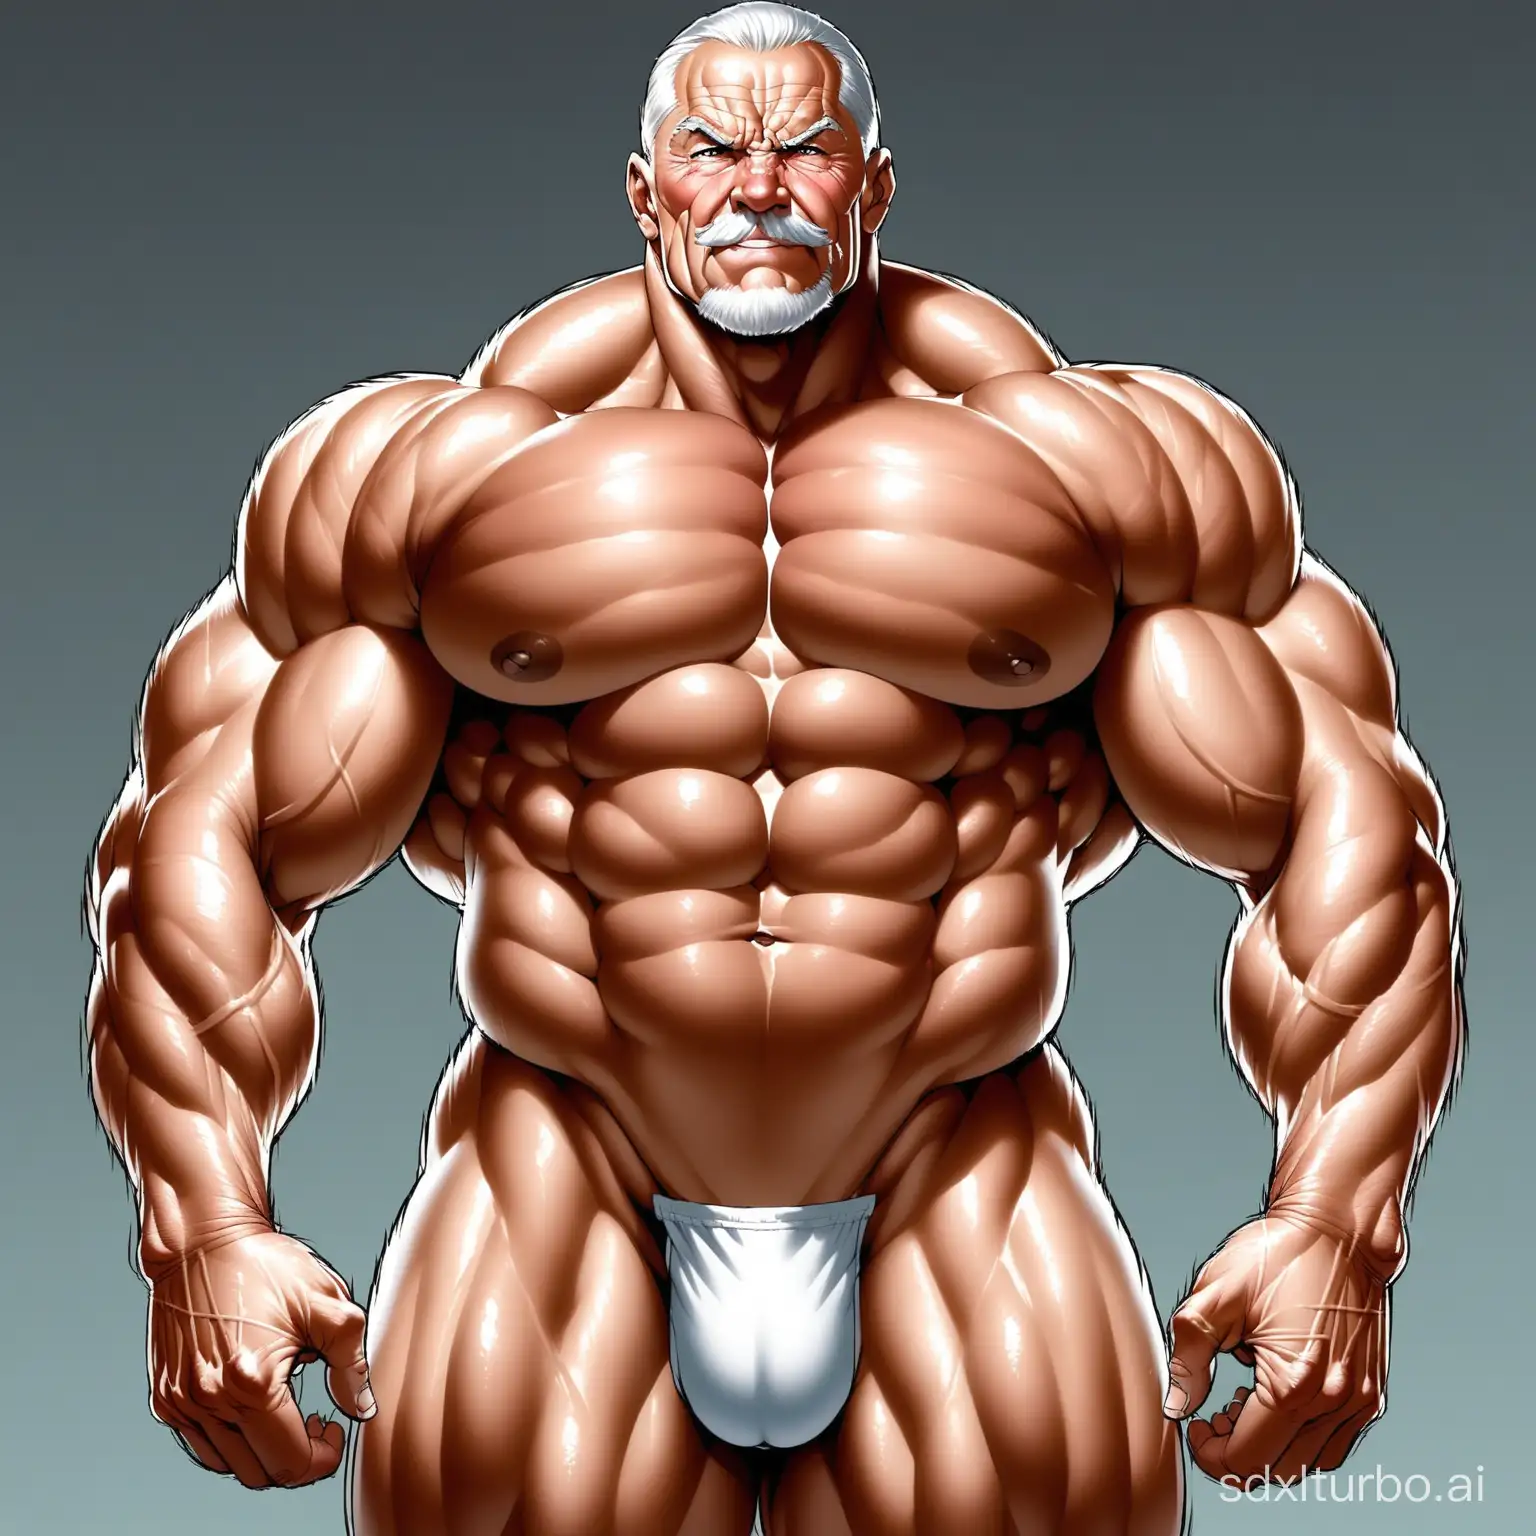 老健身运动员裸身肌肉体积巨大可见，肌肉膨胀龟头非常大